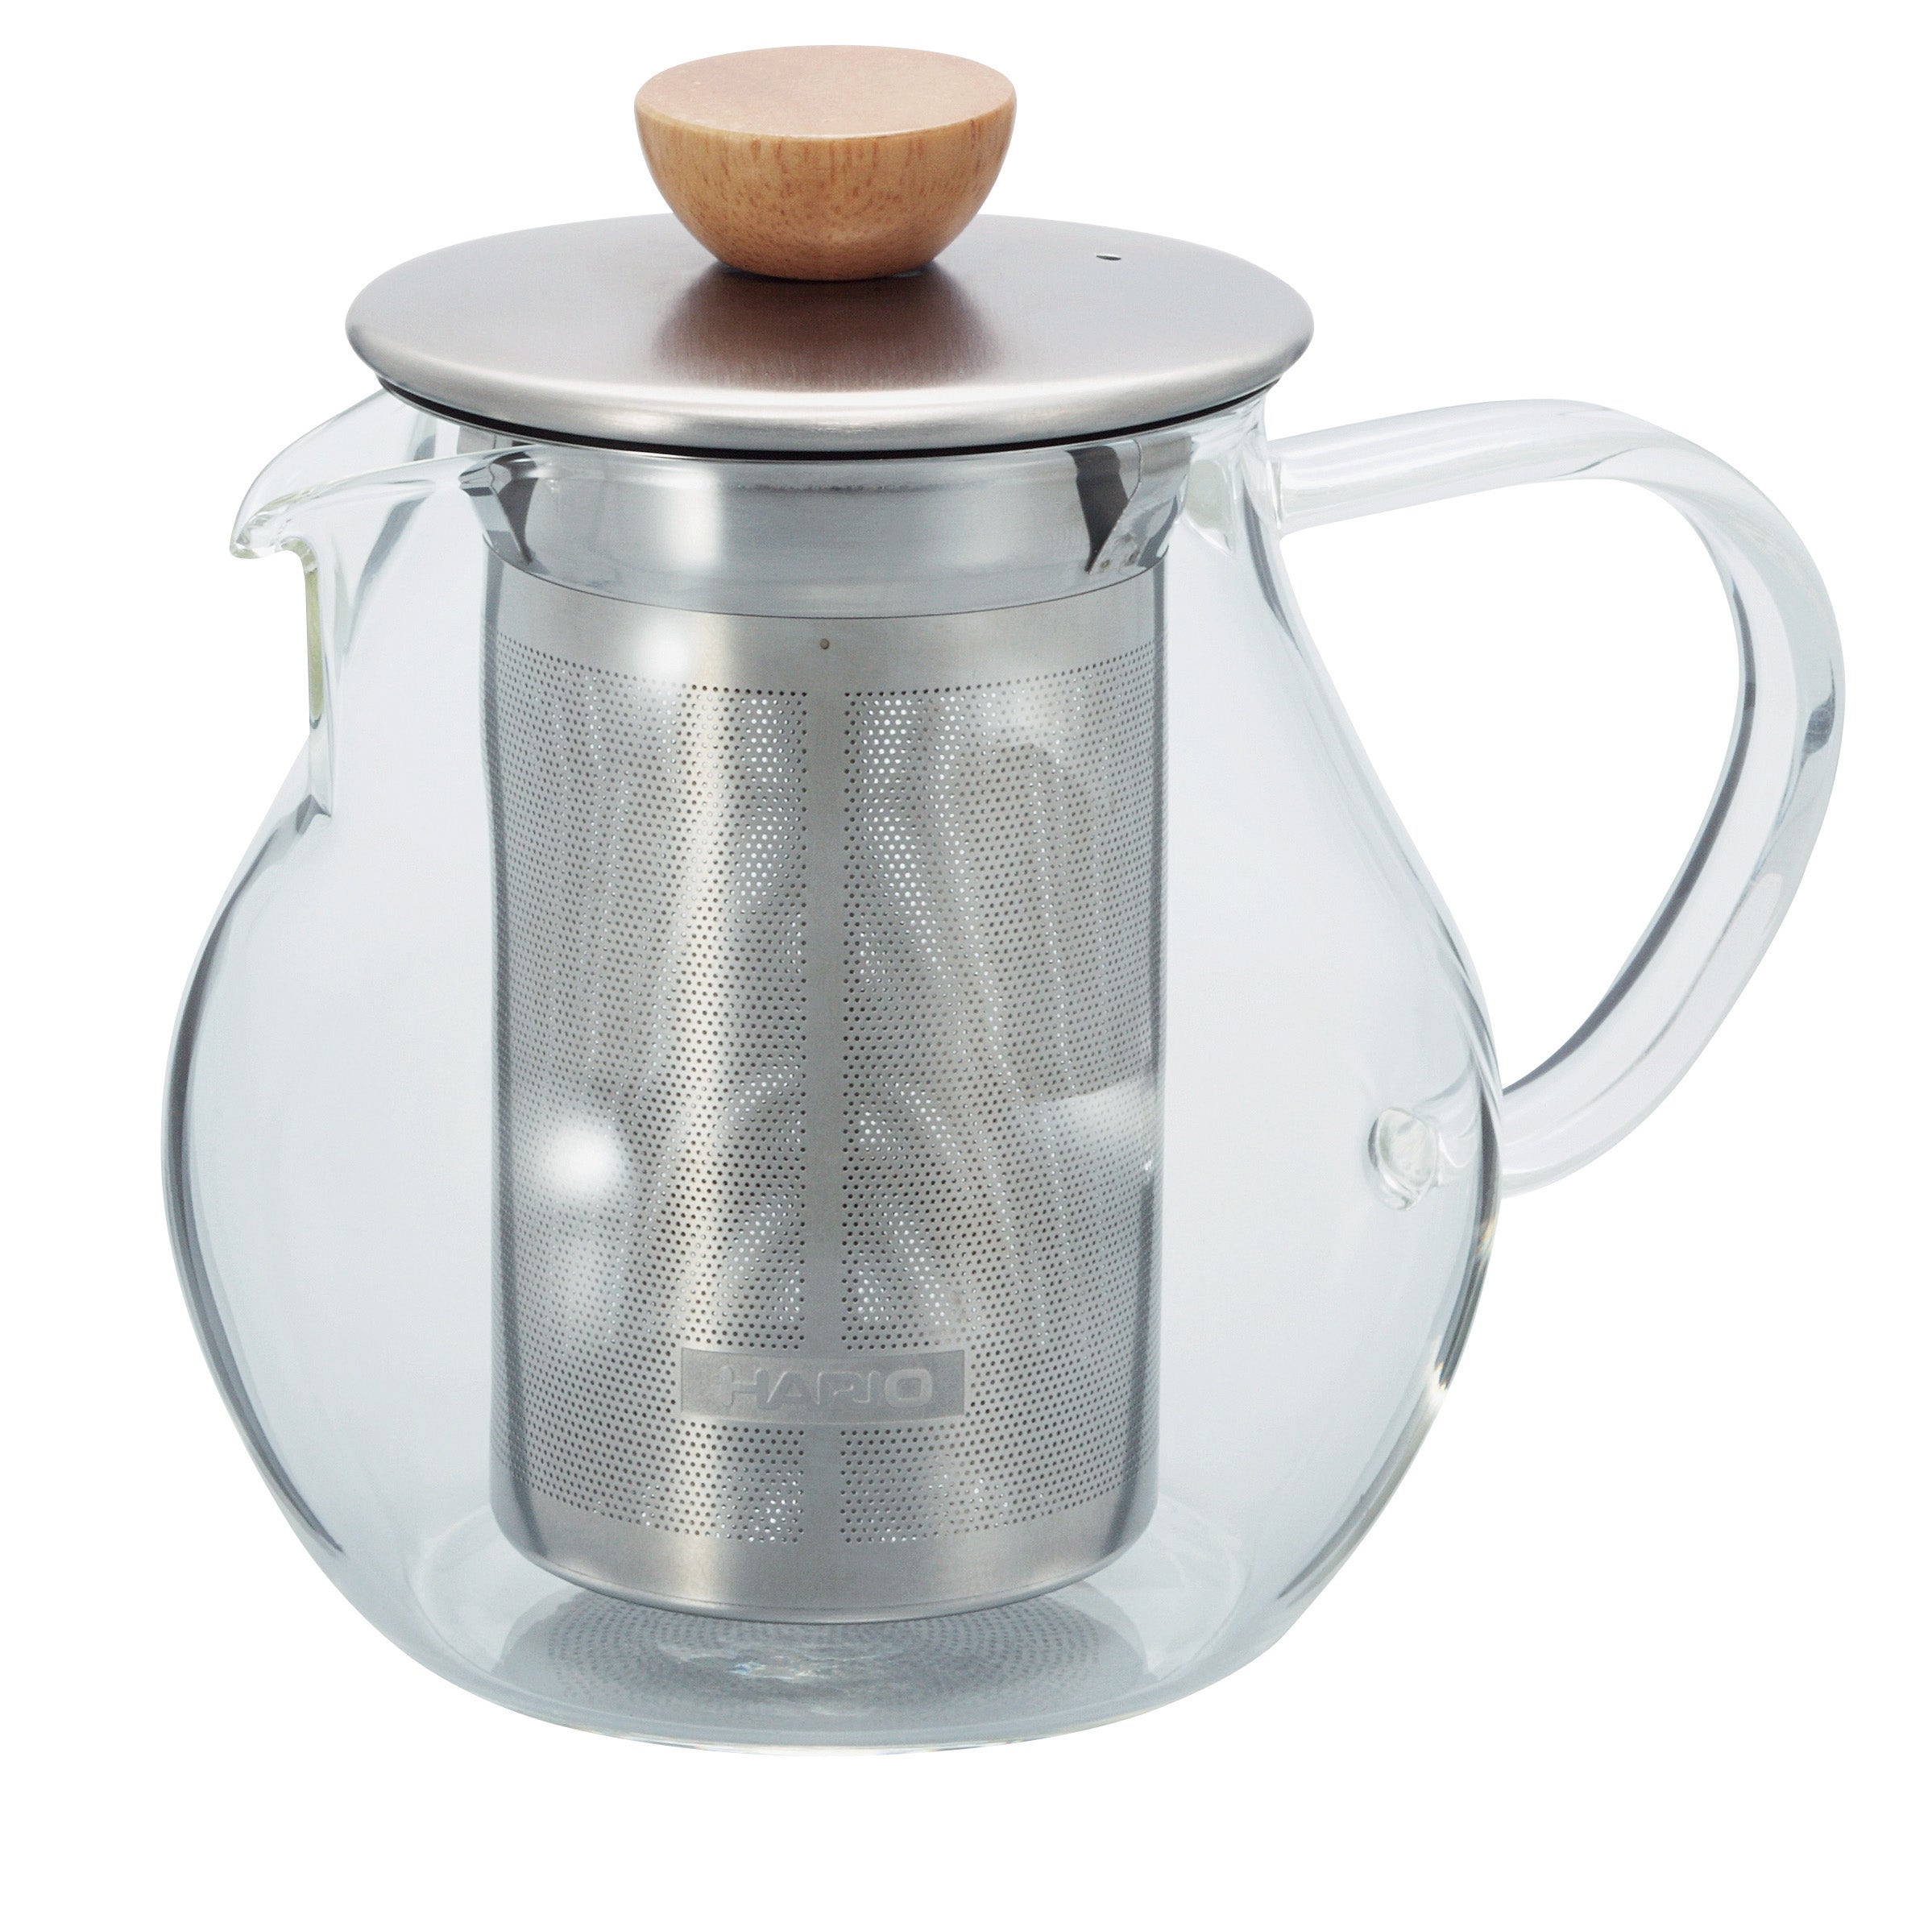 Caraffa-filtro Hario | Tpc-45hsv tea pitcher 450ml